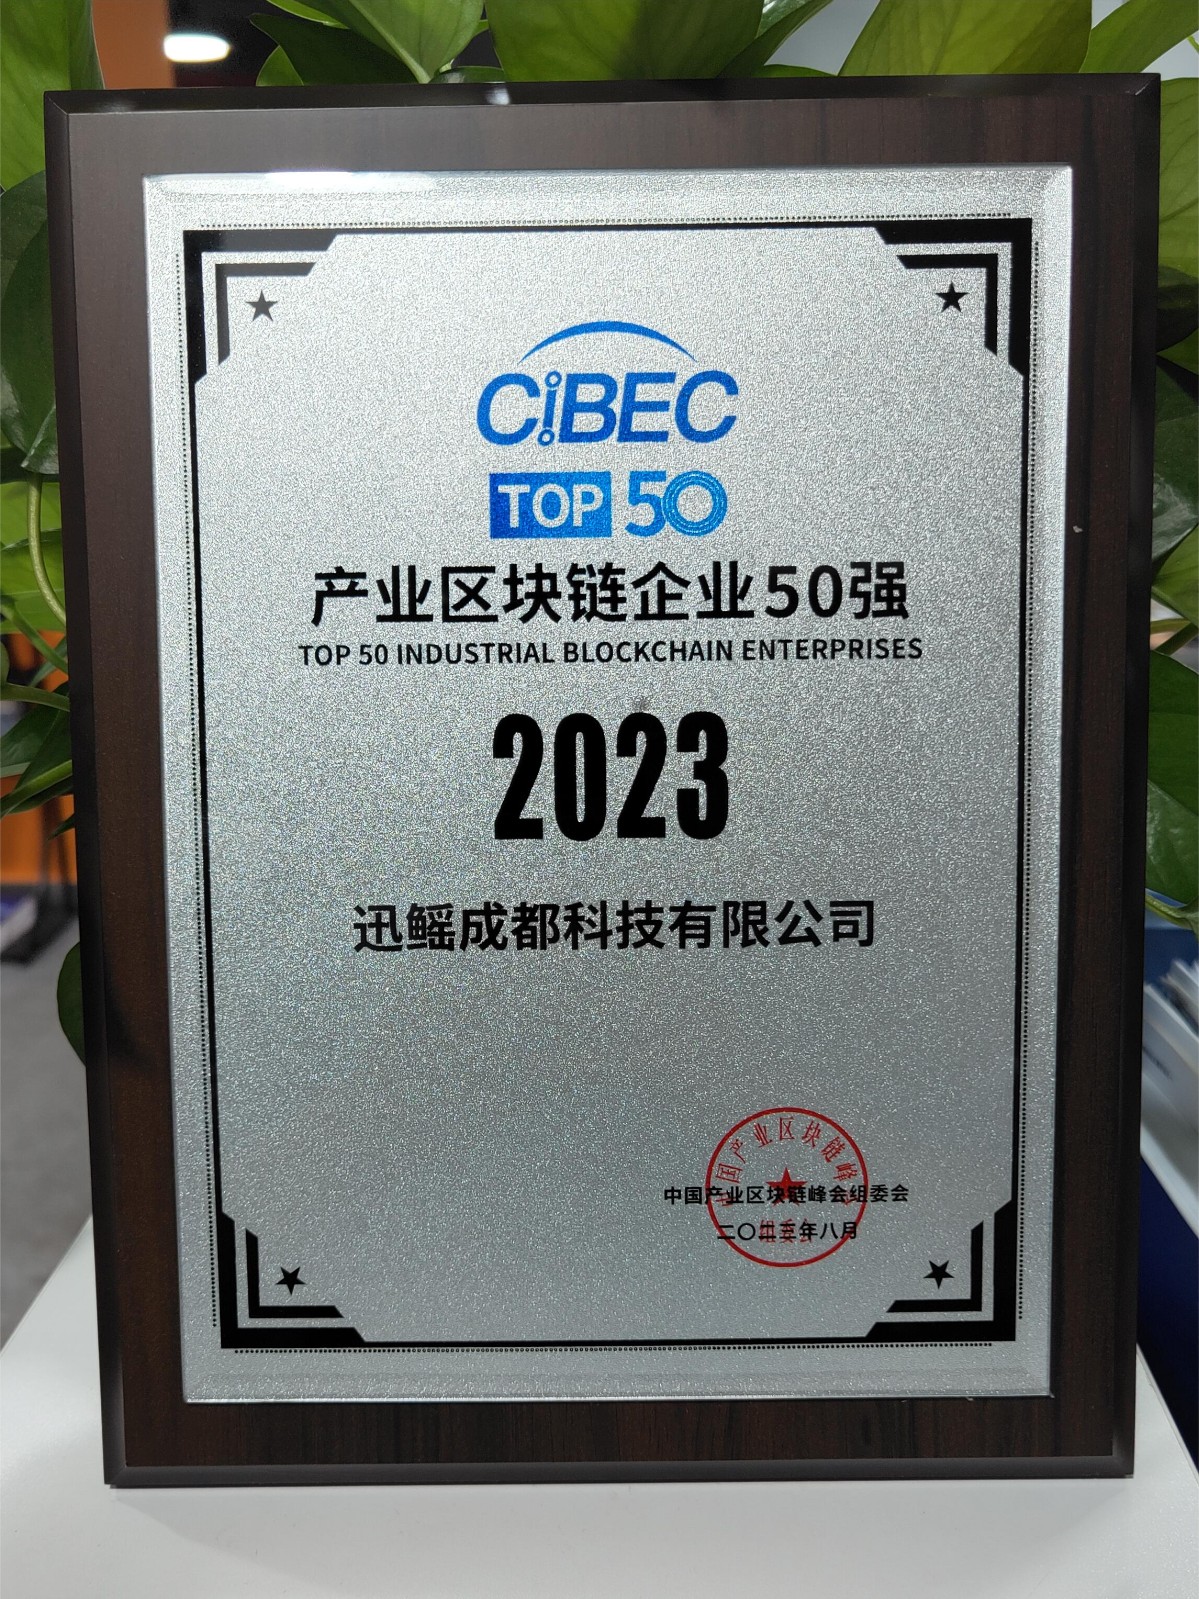 2023.8.29-CIBEC-2023中国产业区块链企业50强.jpg